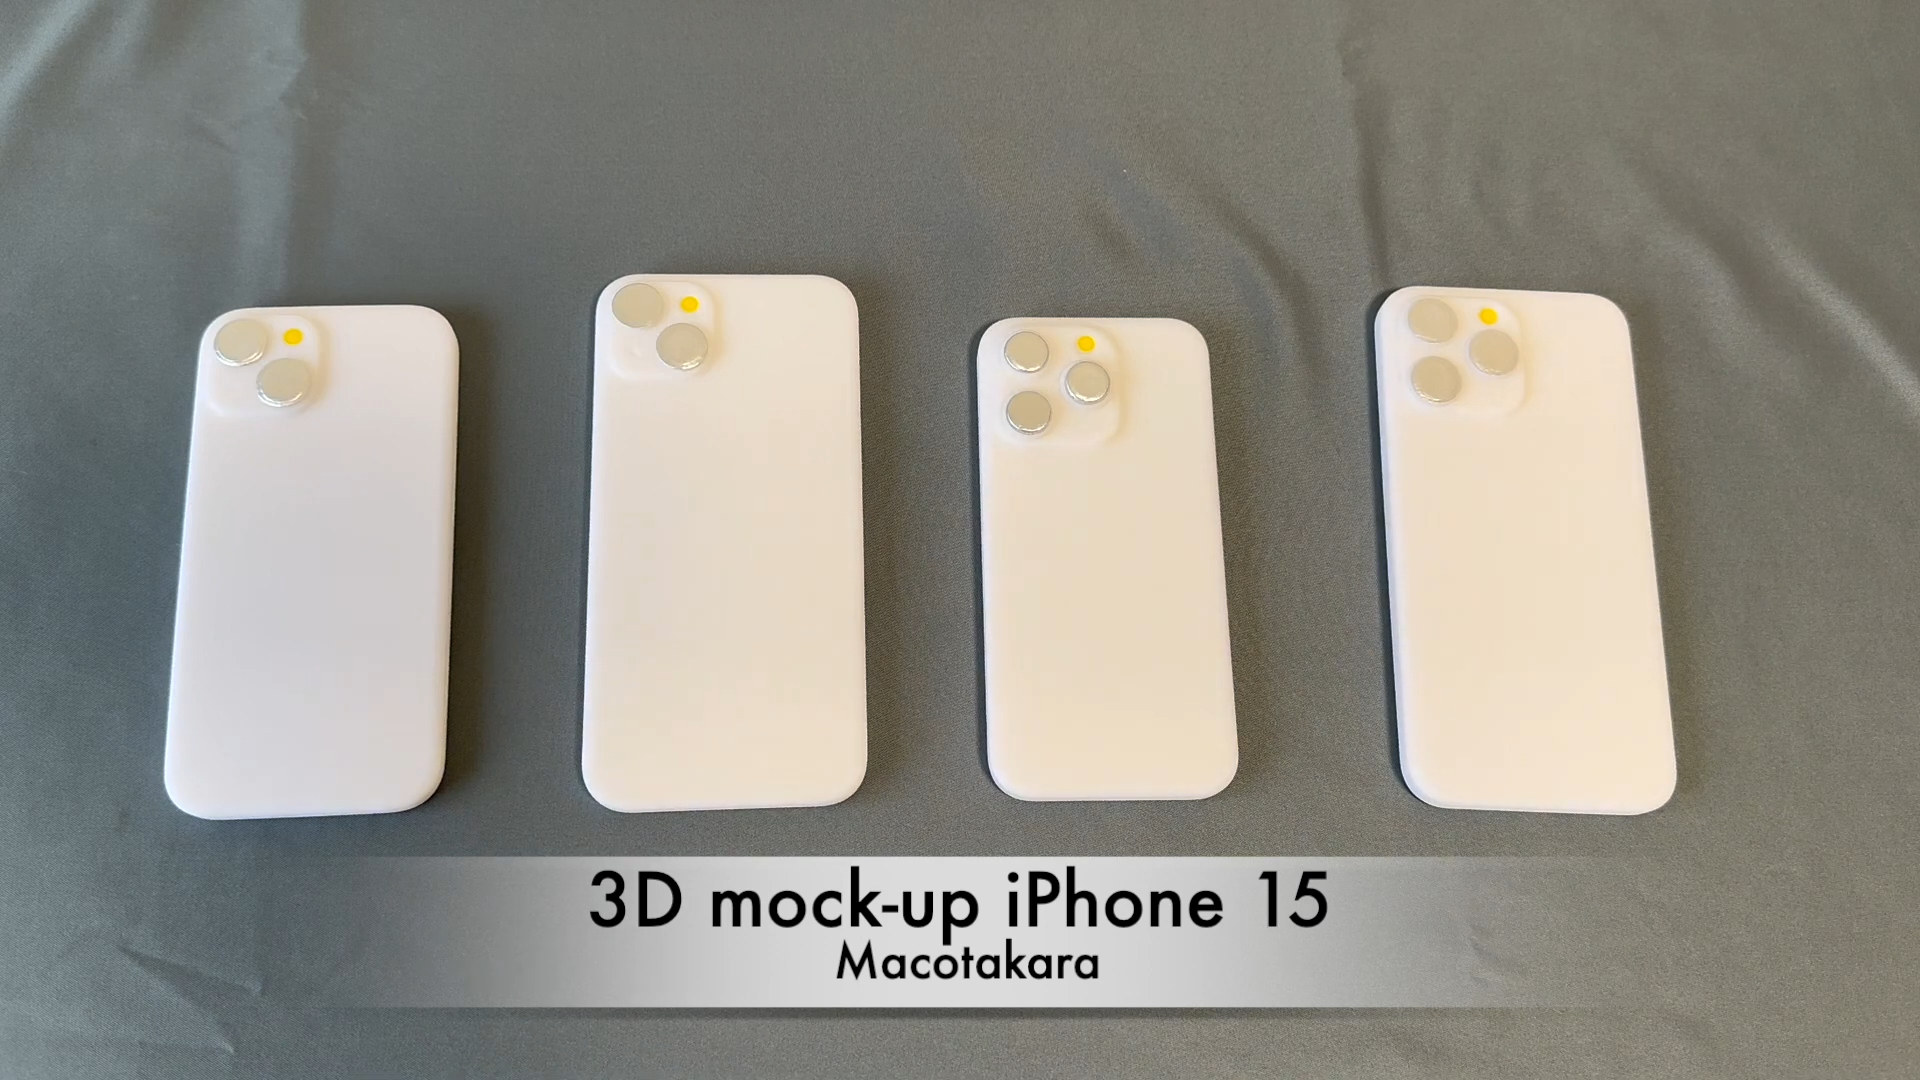 Mô hình bộ 4 iPhone 15 lần đầu xuất hiện thực tế: Viền siêu mỏng, chốt thiết kế siêu sang - Ảnh 1.